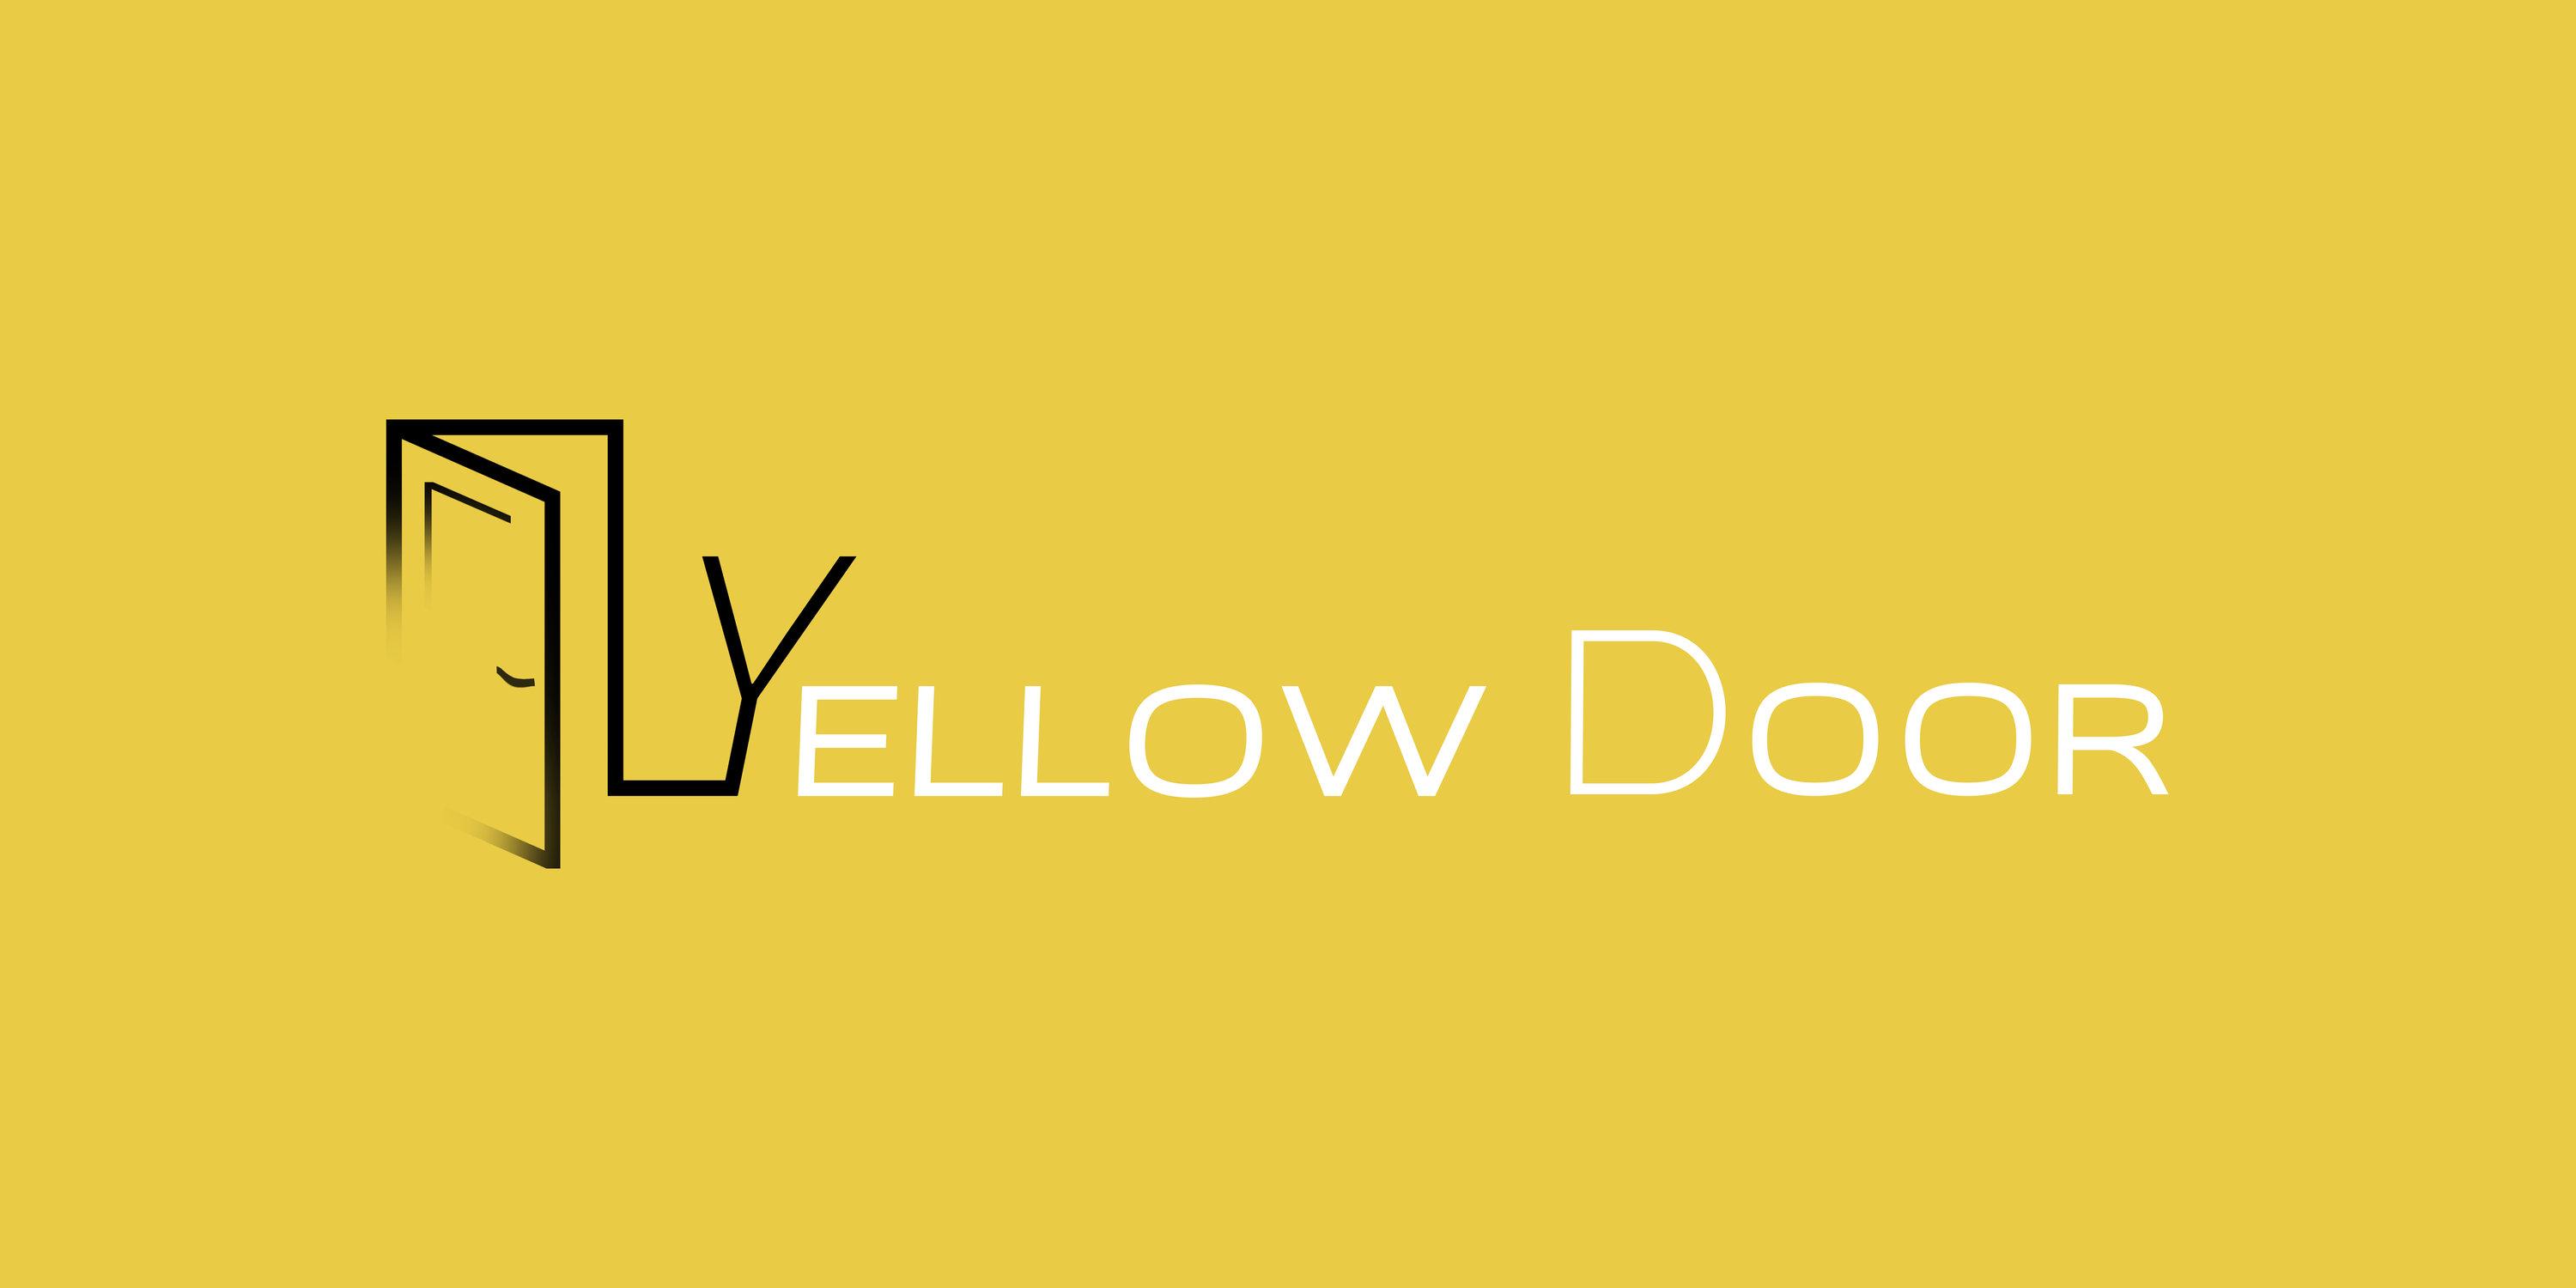 Door Logo - Yellow Door Logo - Essex Local OfferEssex Local Offer